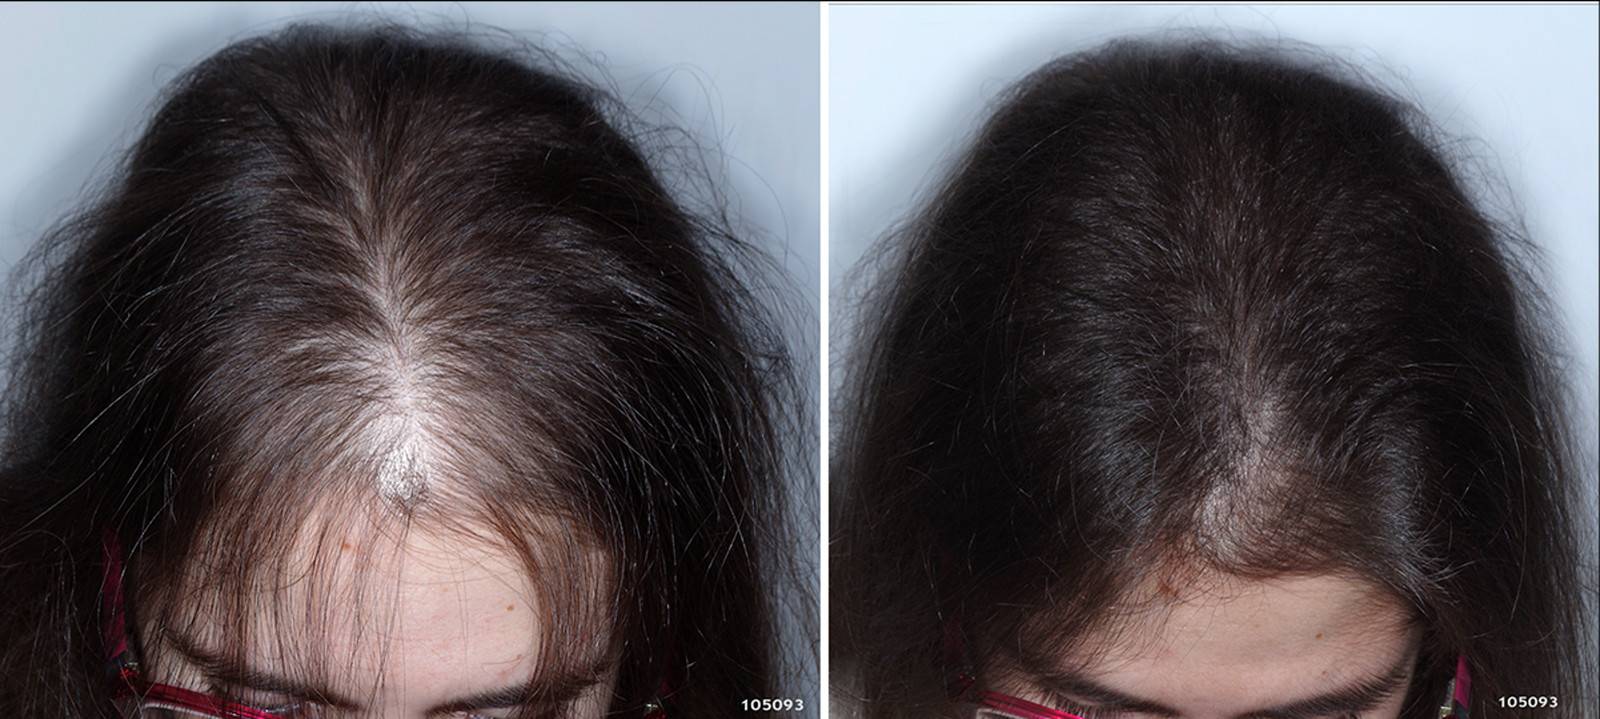 Потеря волос: как остановить сильную потерю волос и можно ли контролировать выпадение волос?